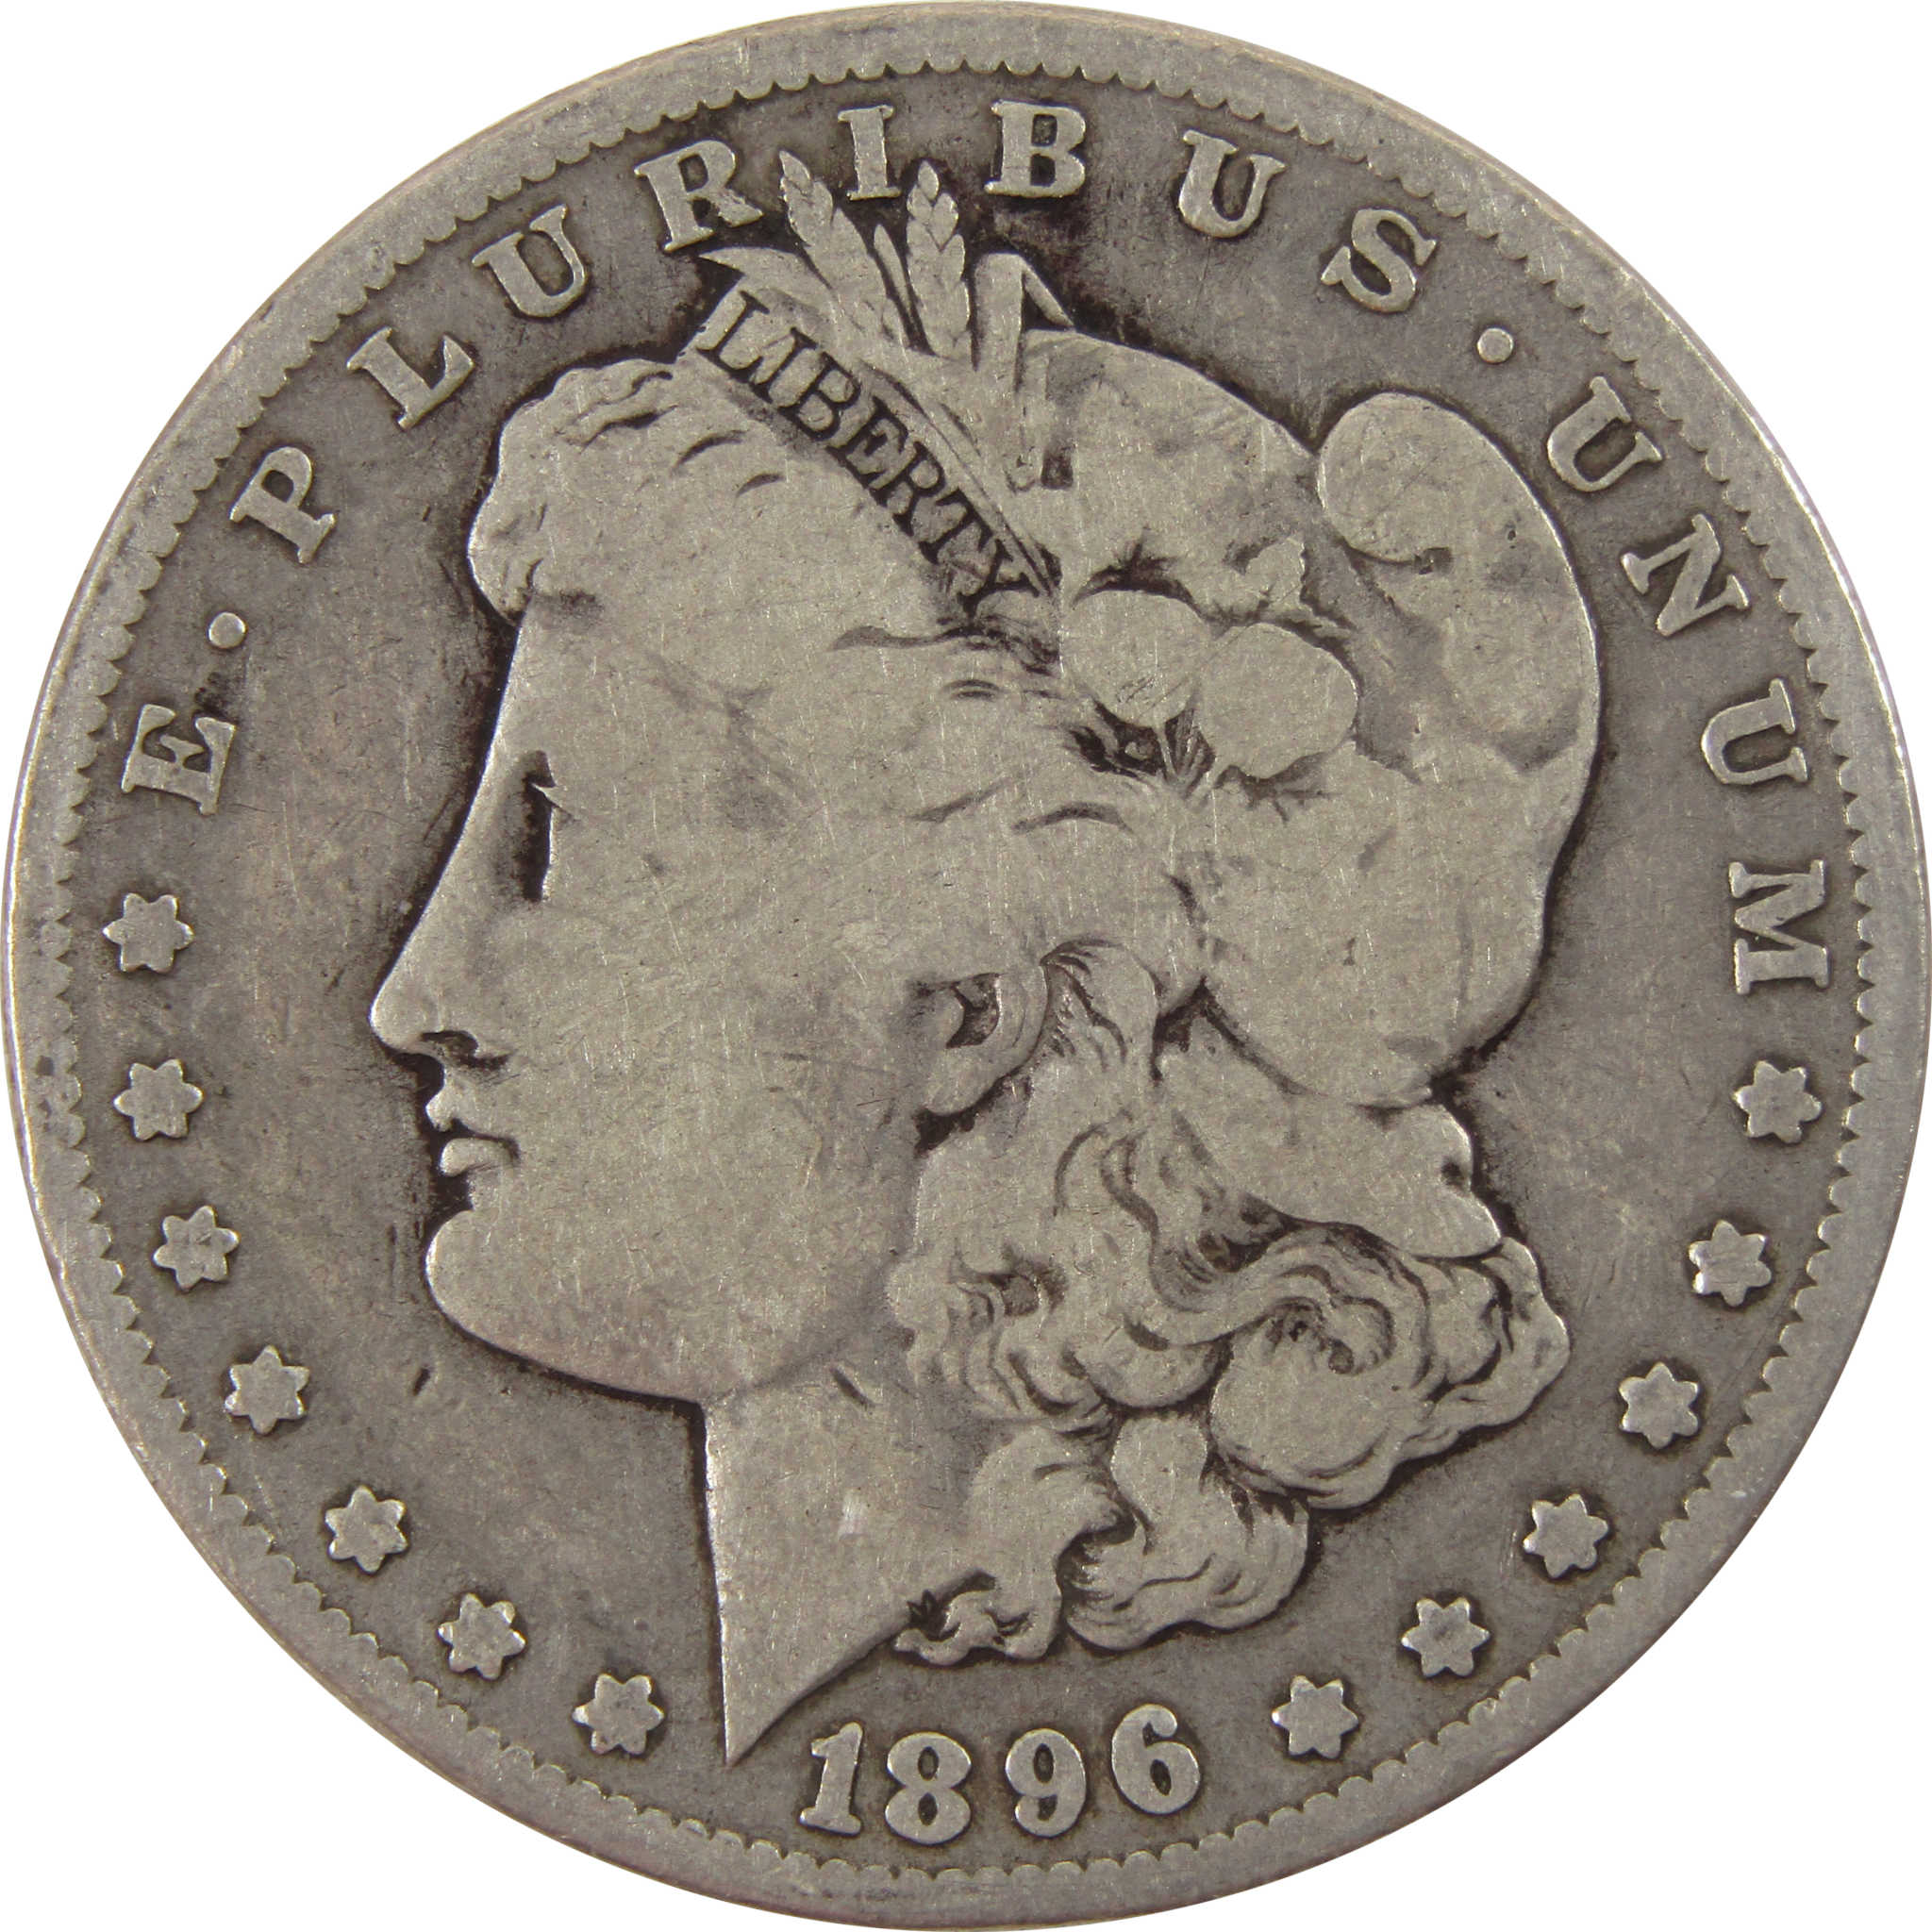 1896 O Morgan Dollar VG Very Good 90% Silver $1 Coin SKU:I8006 - Morgan coin - Morgan silver dollar - Morgan silver dollar for sale - Profile Coins &amp; Collectibles